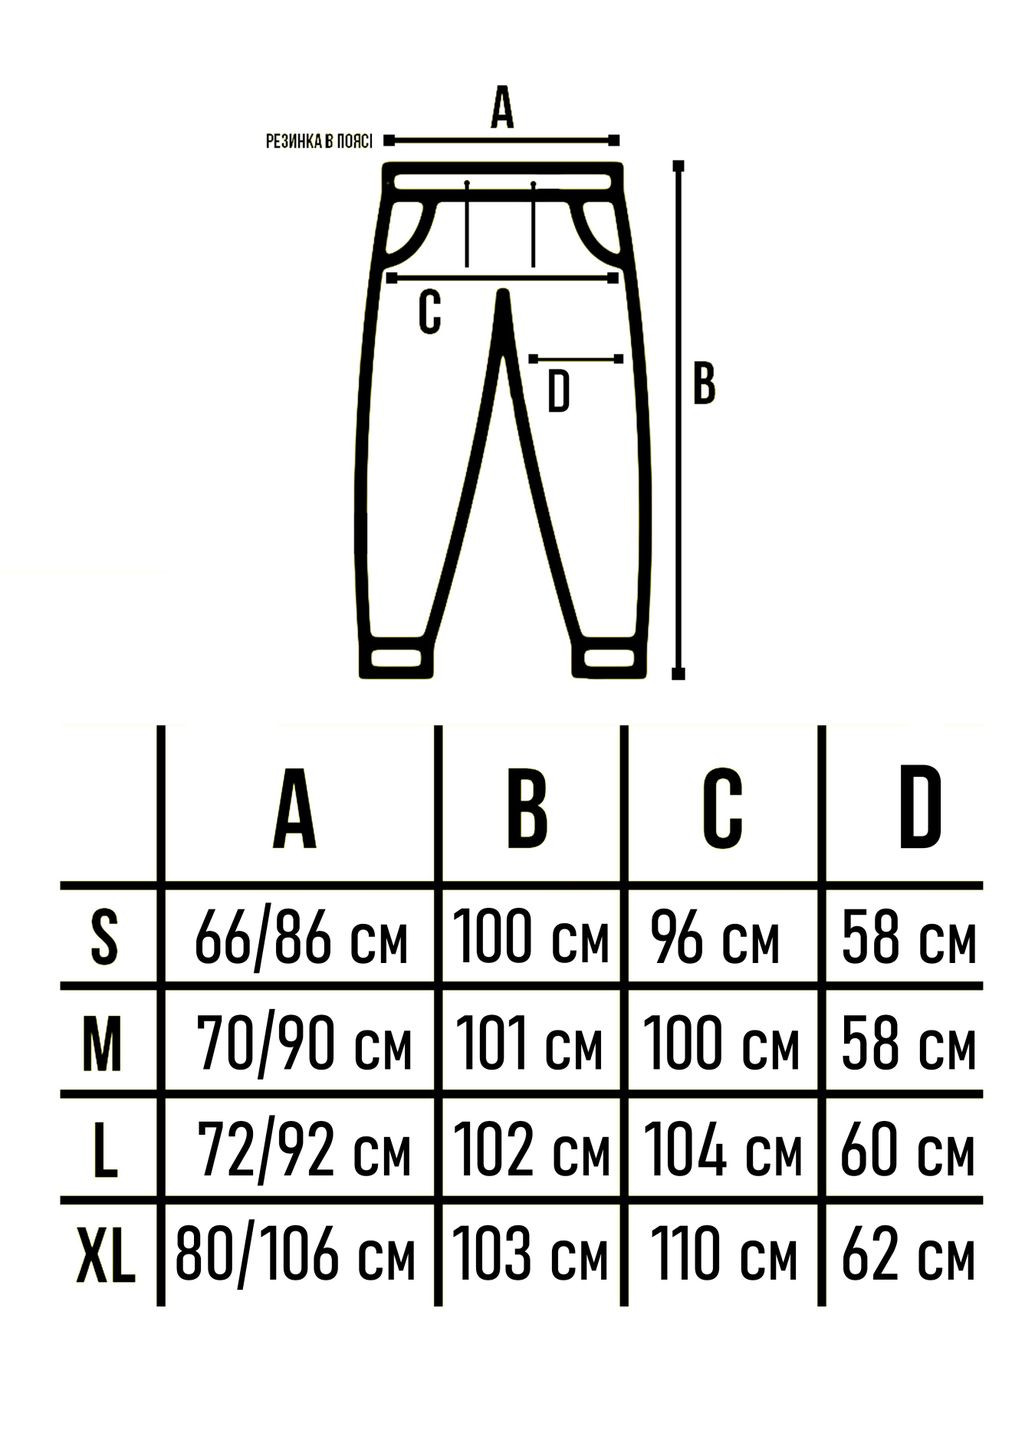 Серые спортивные демисезонные джоггеры брюки Custom Wear